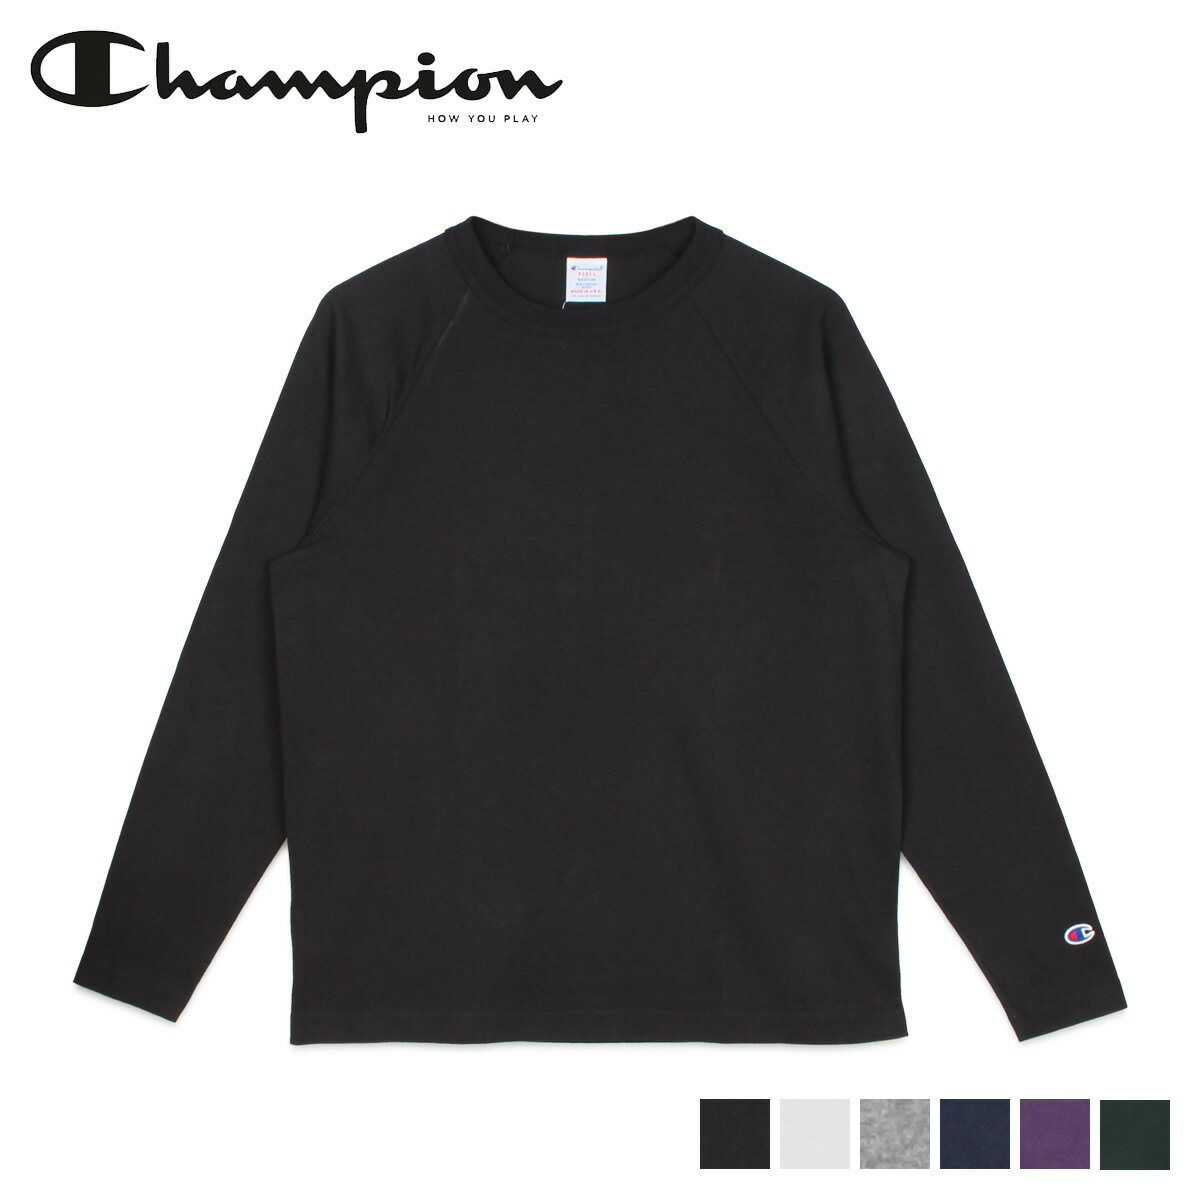 Champion チャンピオン Tシャツ 長袖 ロンT カットソー メンズ T1011 RAGLAN LONG SLEEVE T-SHIRT ブラック ホワイト グレー ネイビー パープル 黒 白 C5-Q401